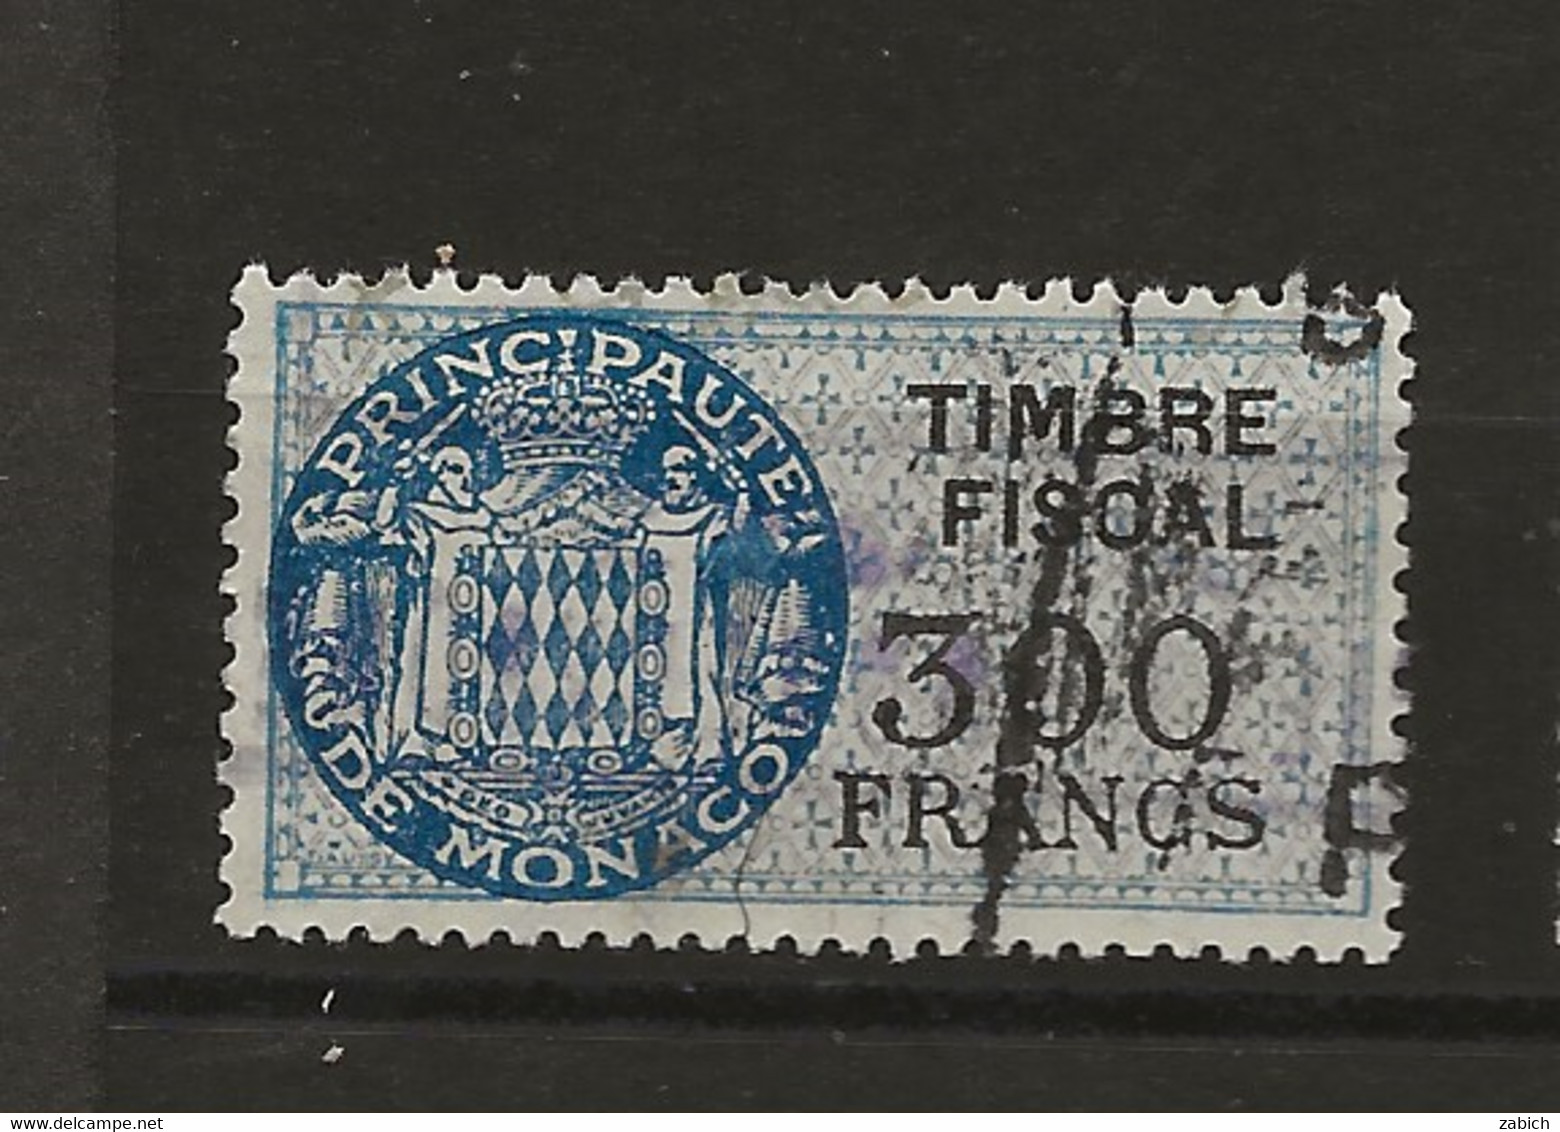 TIMBRES FISCAUX DE MONACO SERIE UNIFIEE  De 1949   N°17  300 Francs Bleu Oblitéré Cote 60 € - Fiscaux